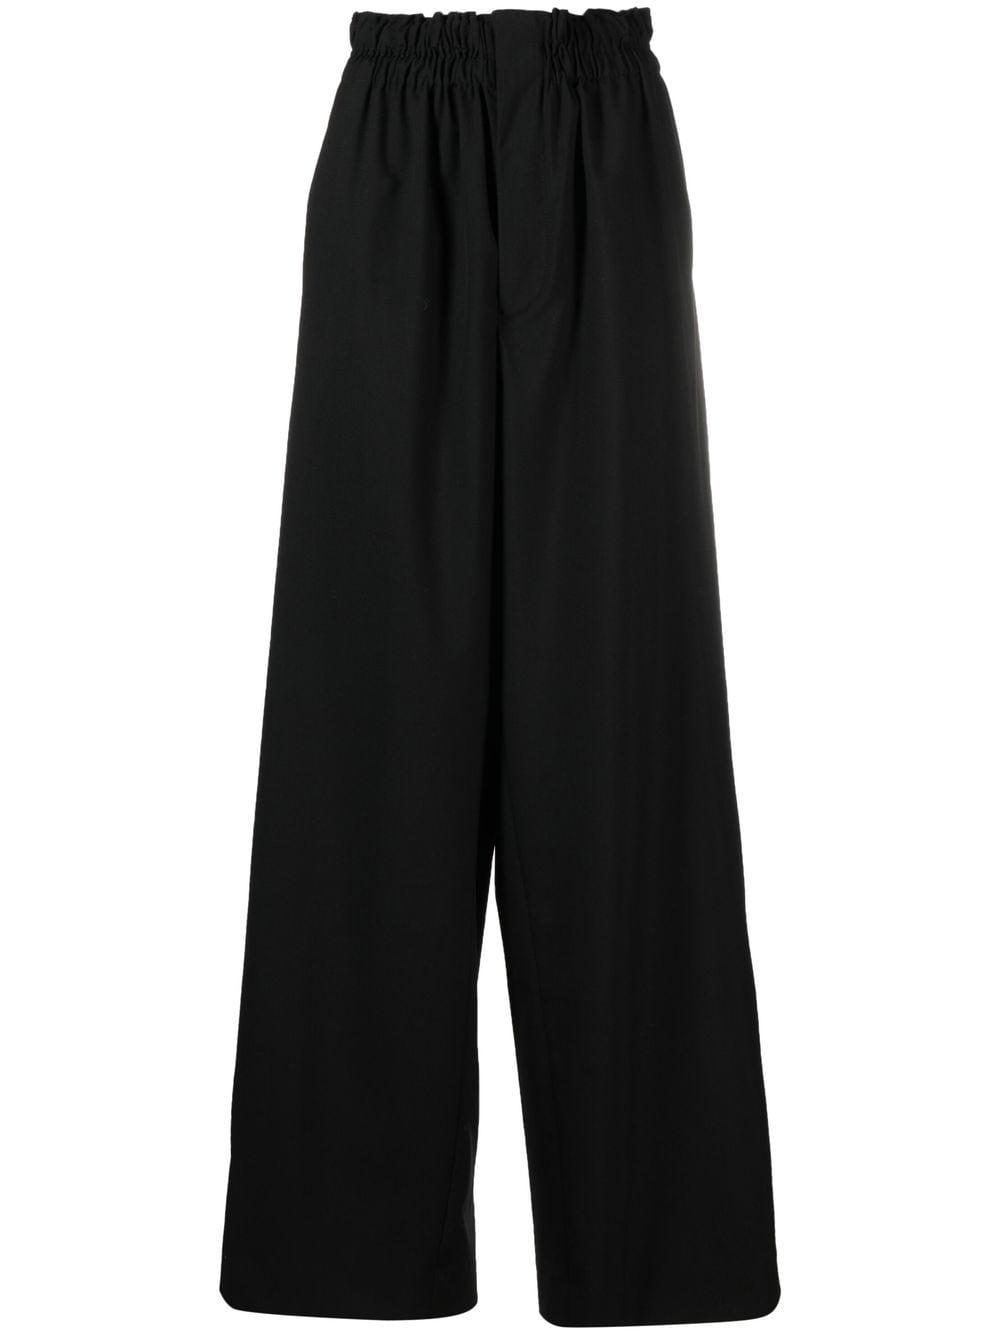 Quira High-rise Wide-leg Trousers in Black | Lyst UK